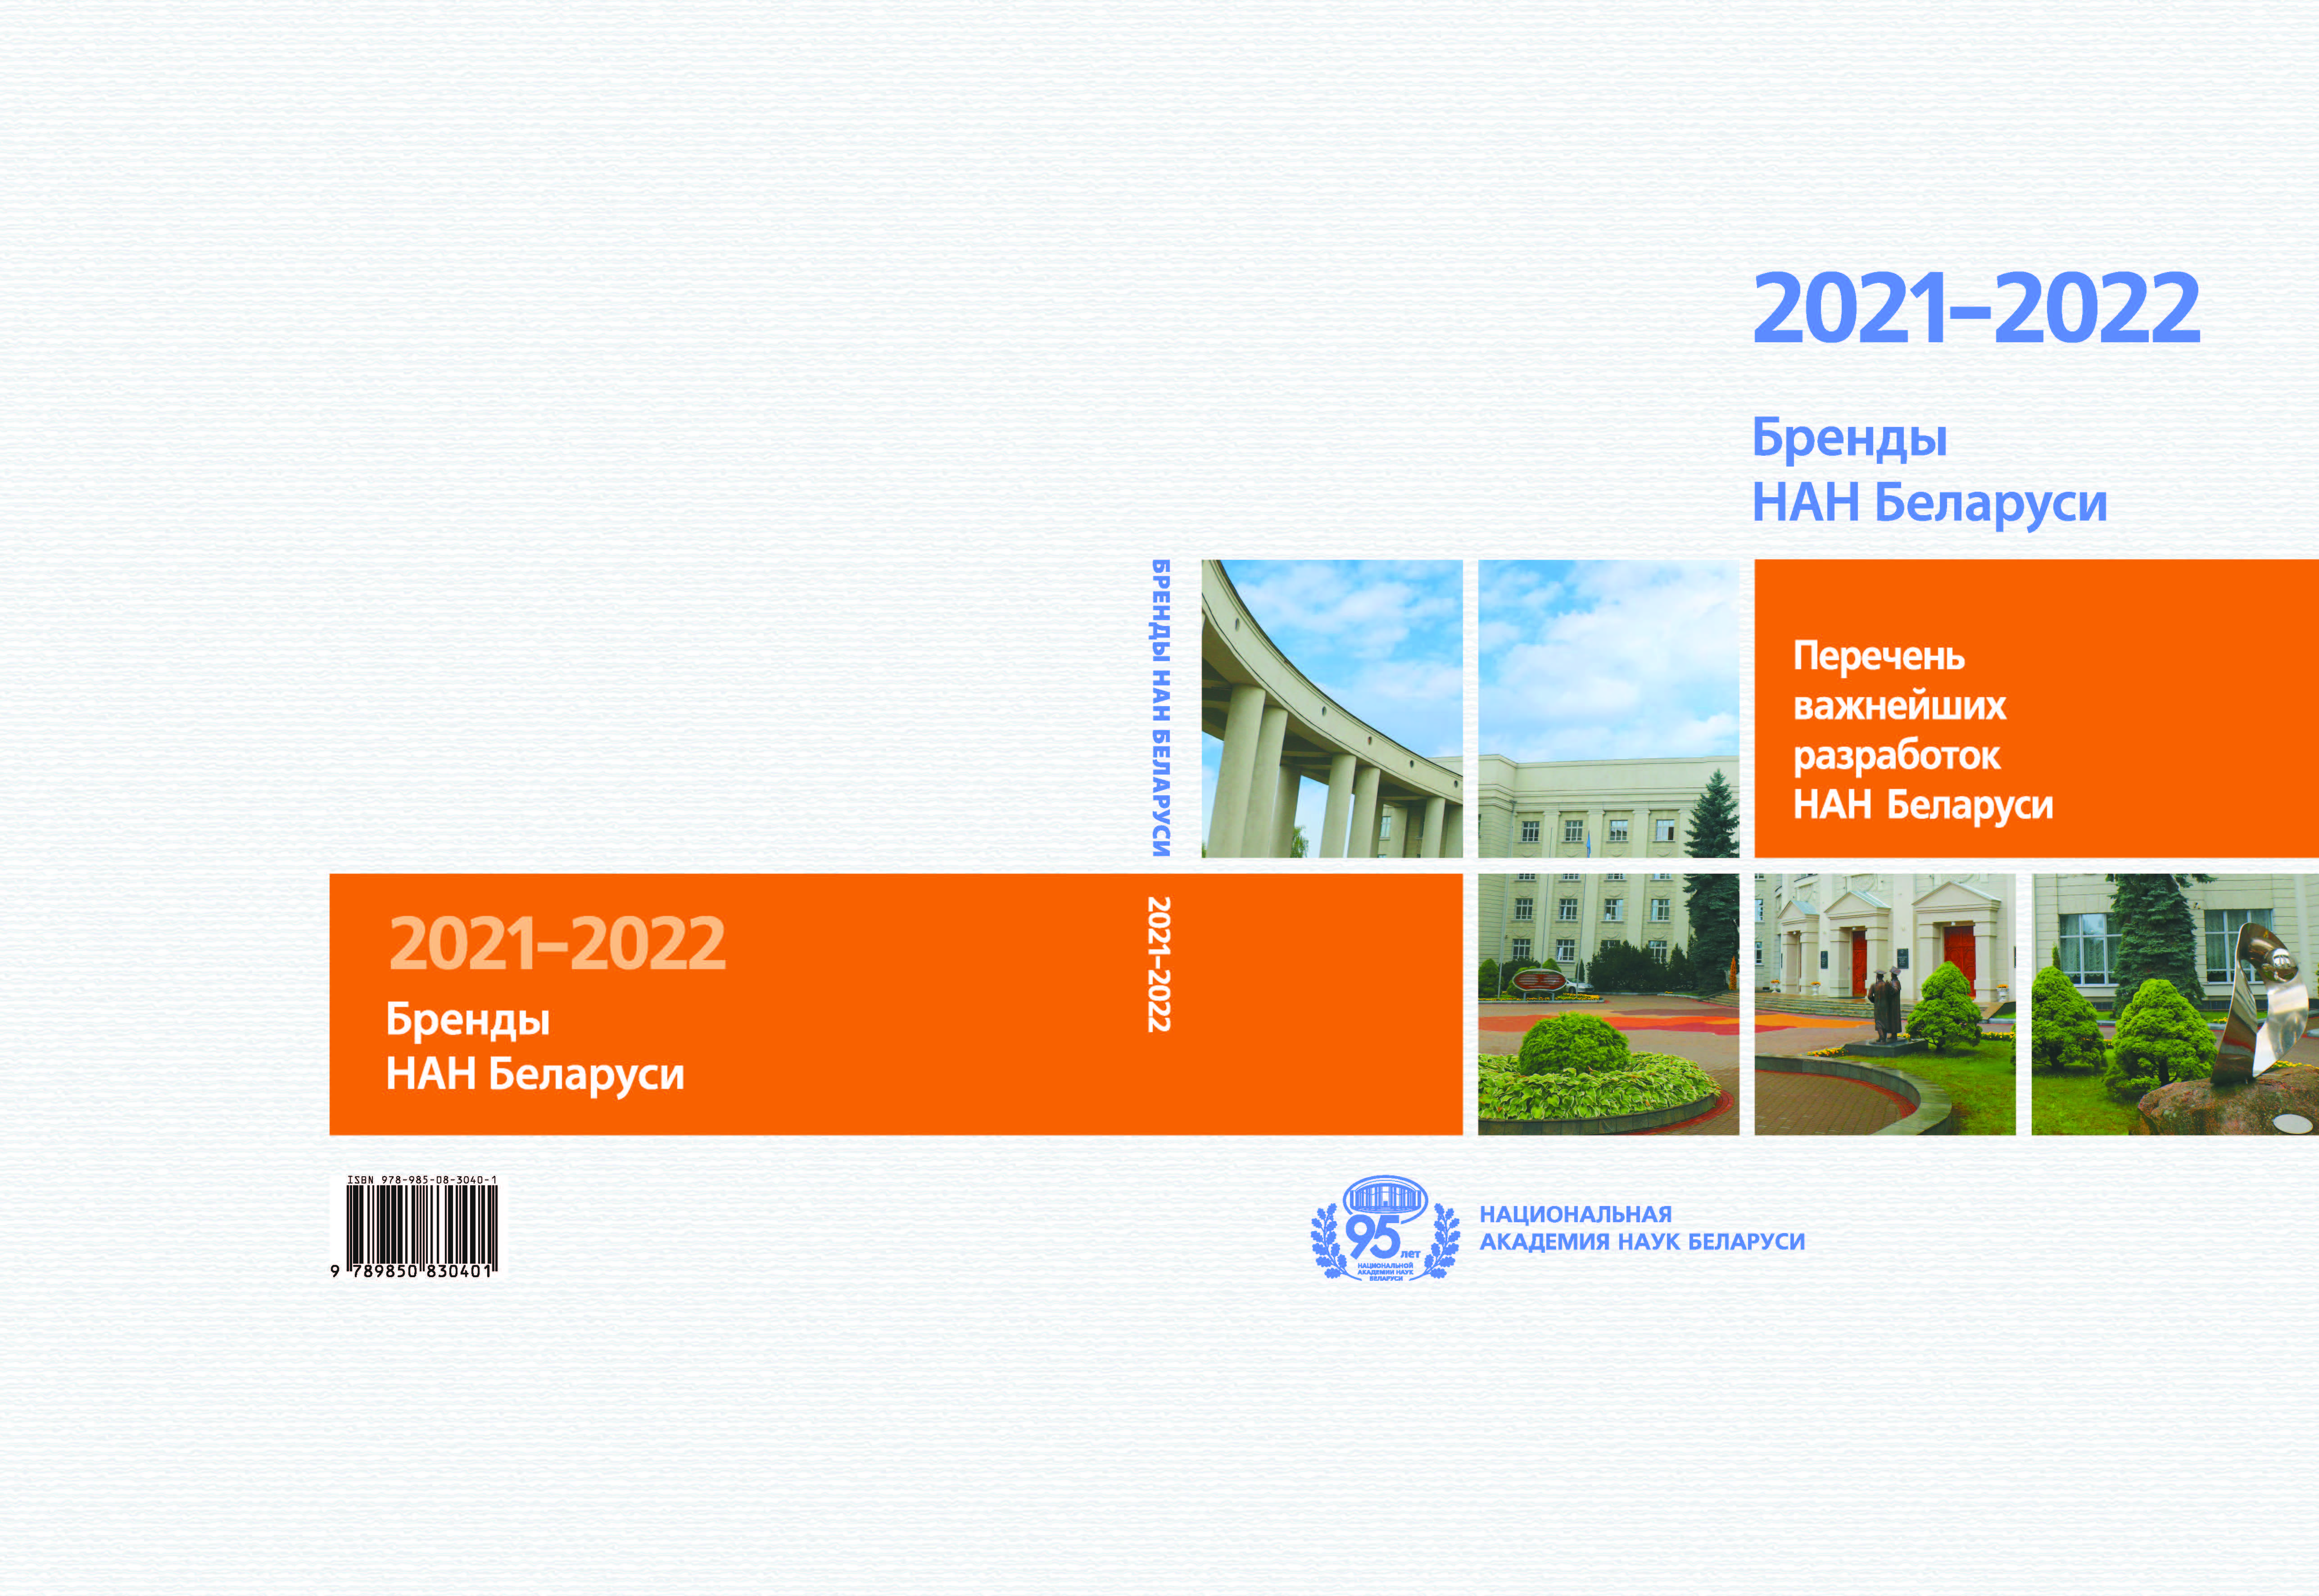 Бренды НАН Беларуси 2021-2022